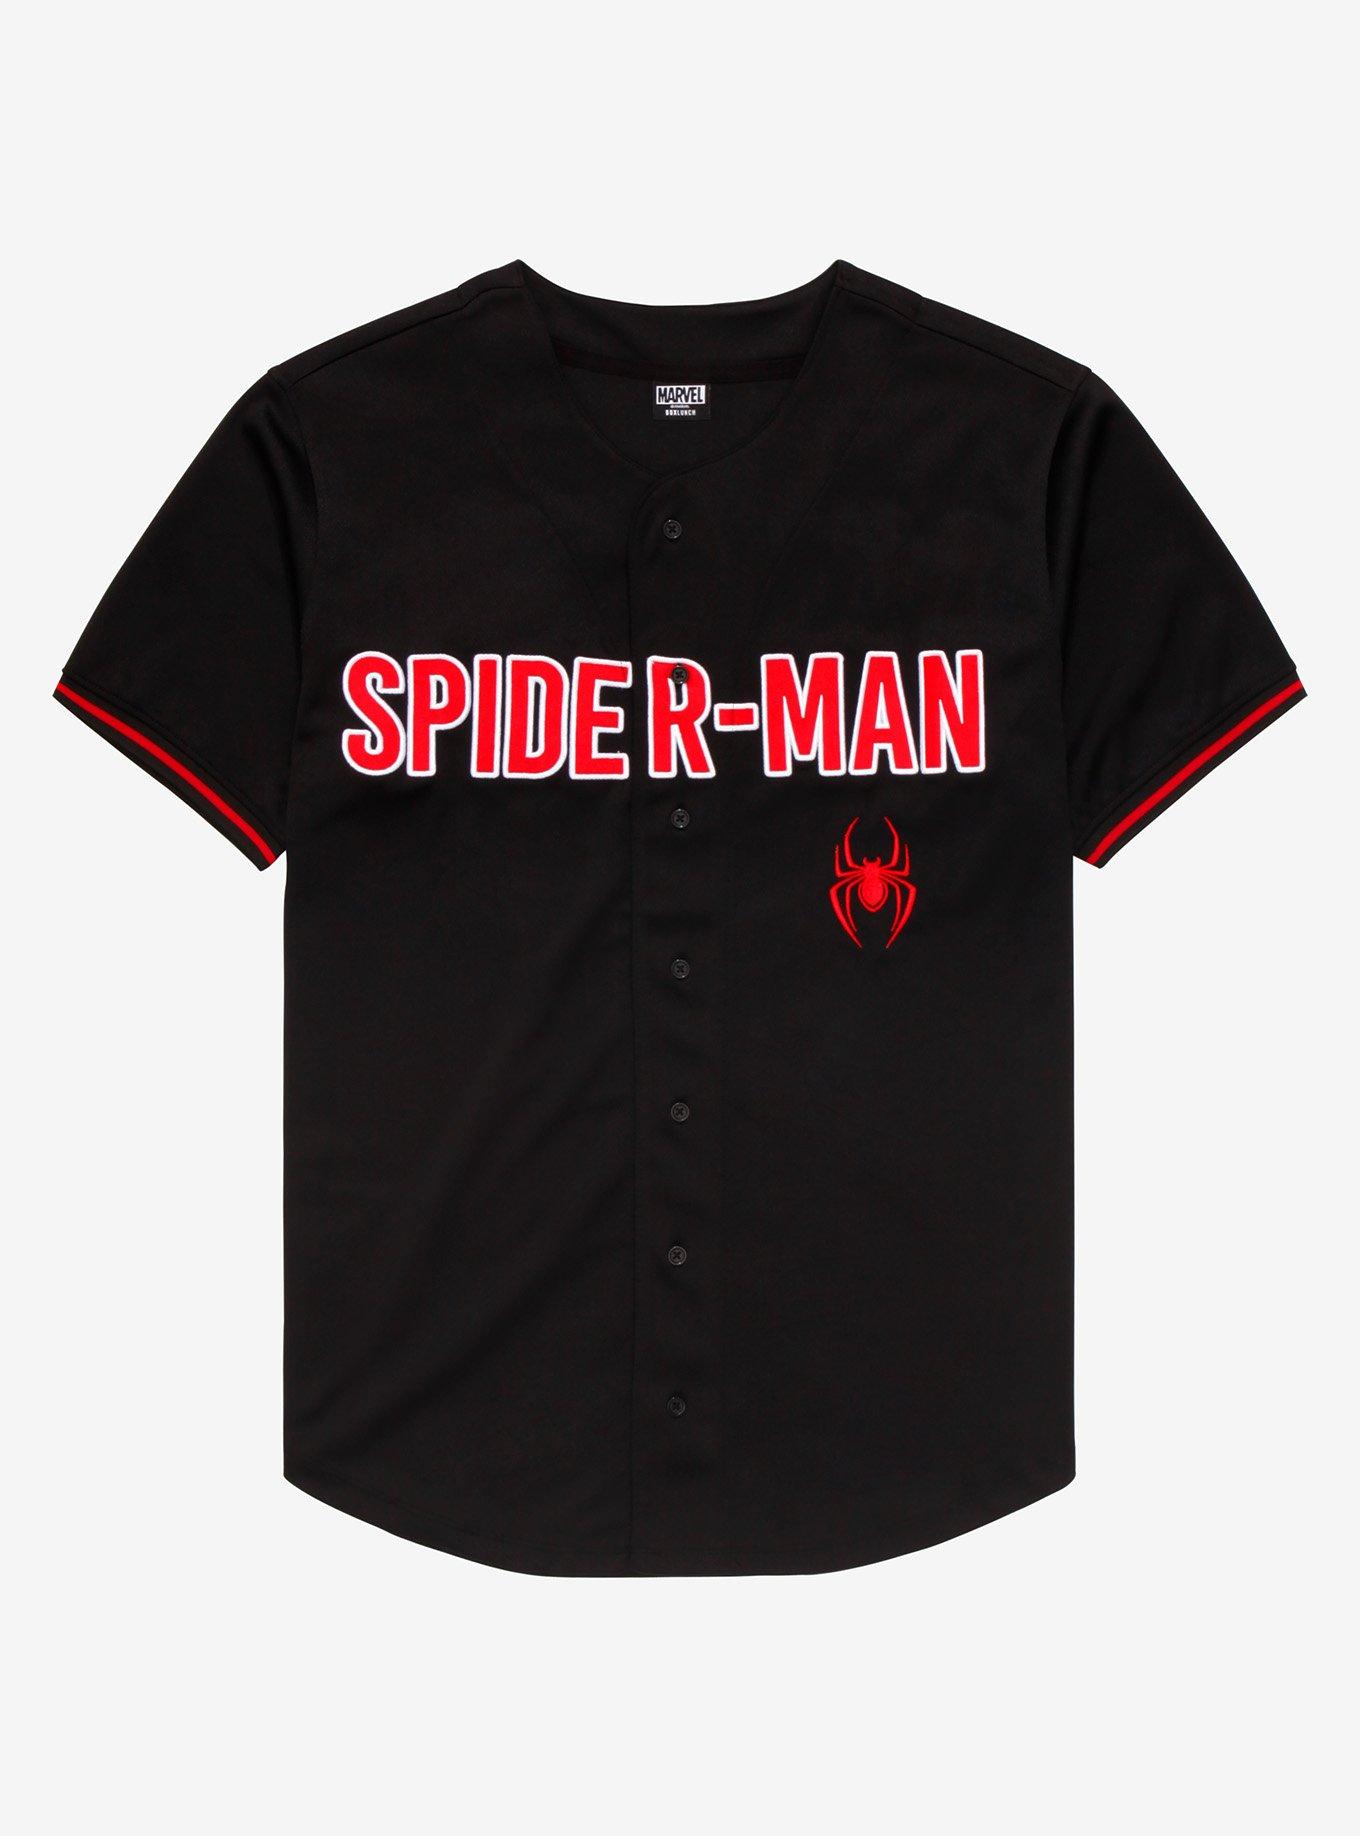 Prince Twins Baseball jersey New Adult Medium stitched logos